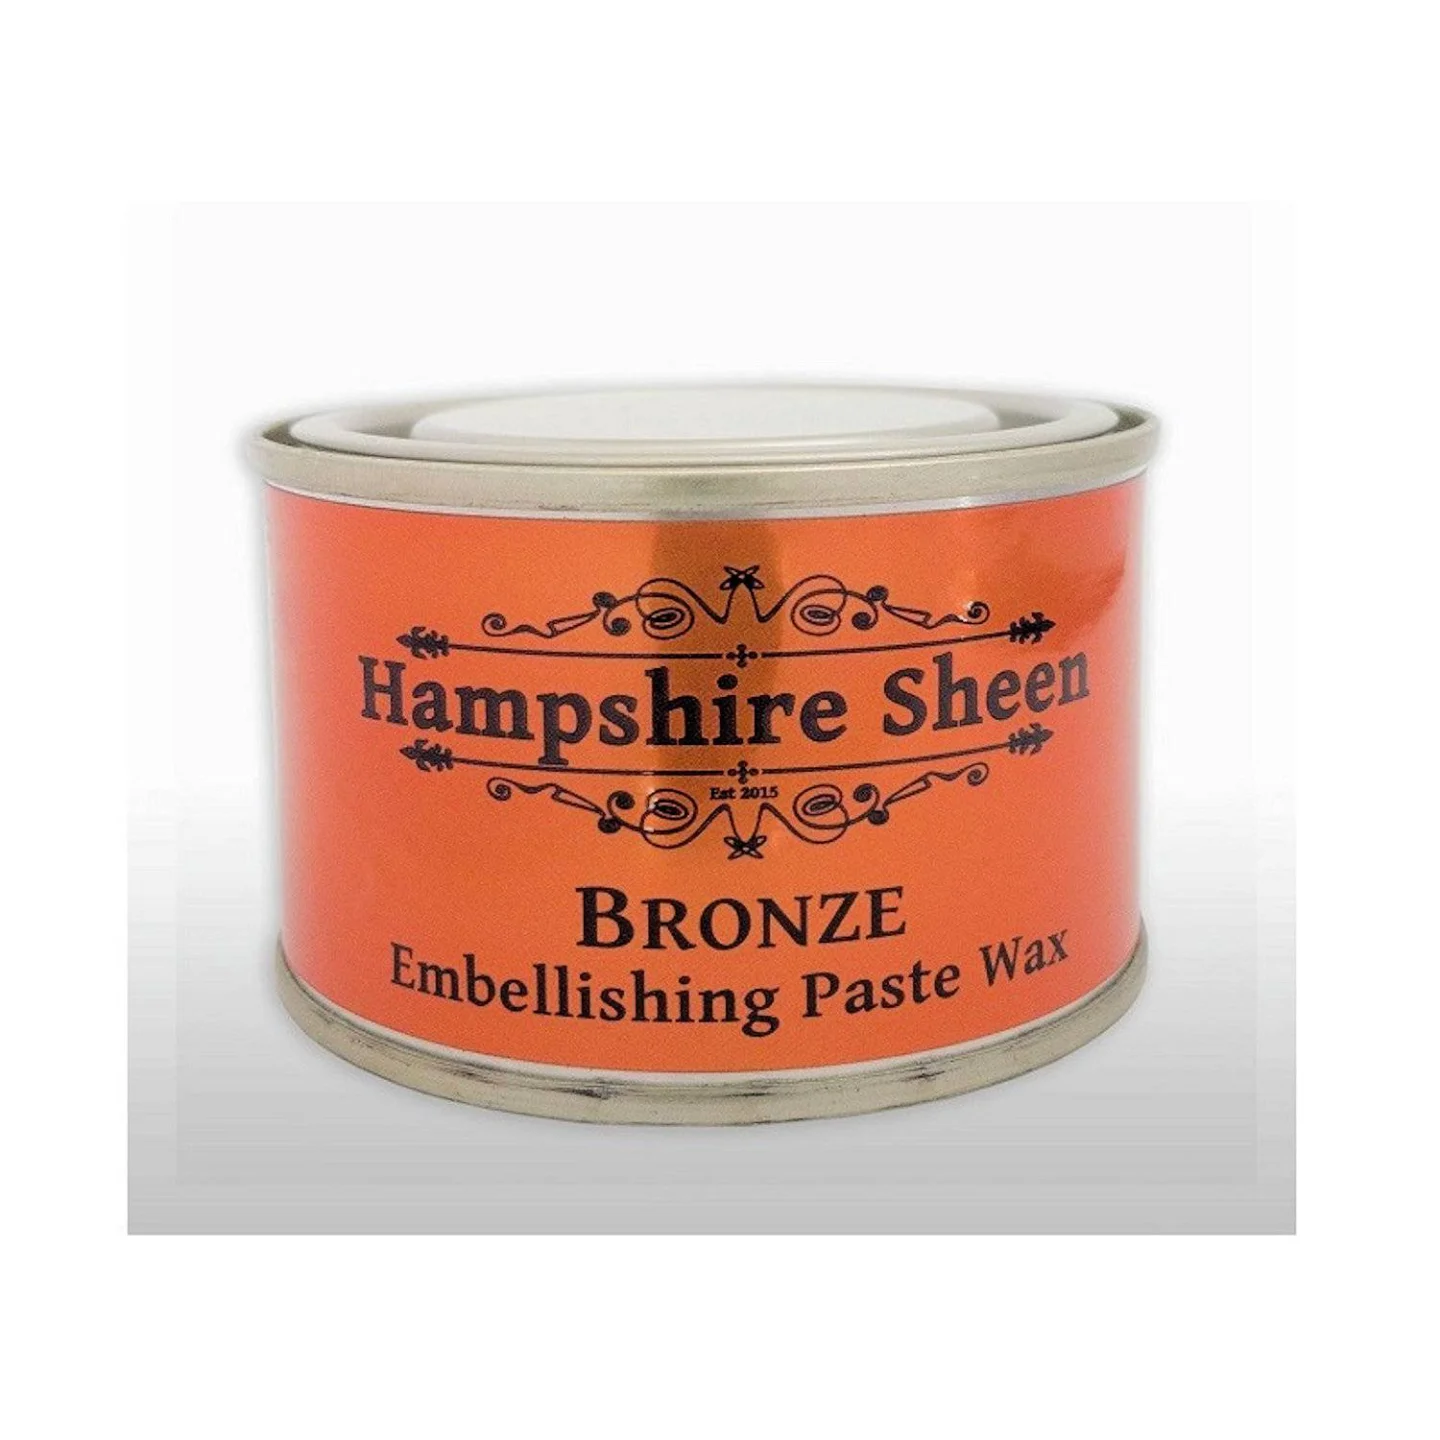 Hampshire-Sheen-bronze-wax.